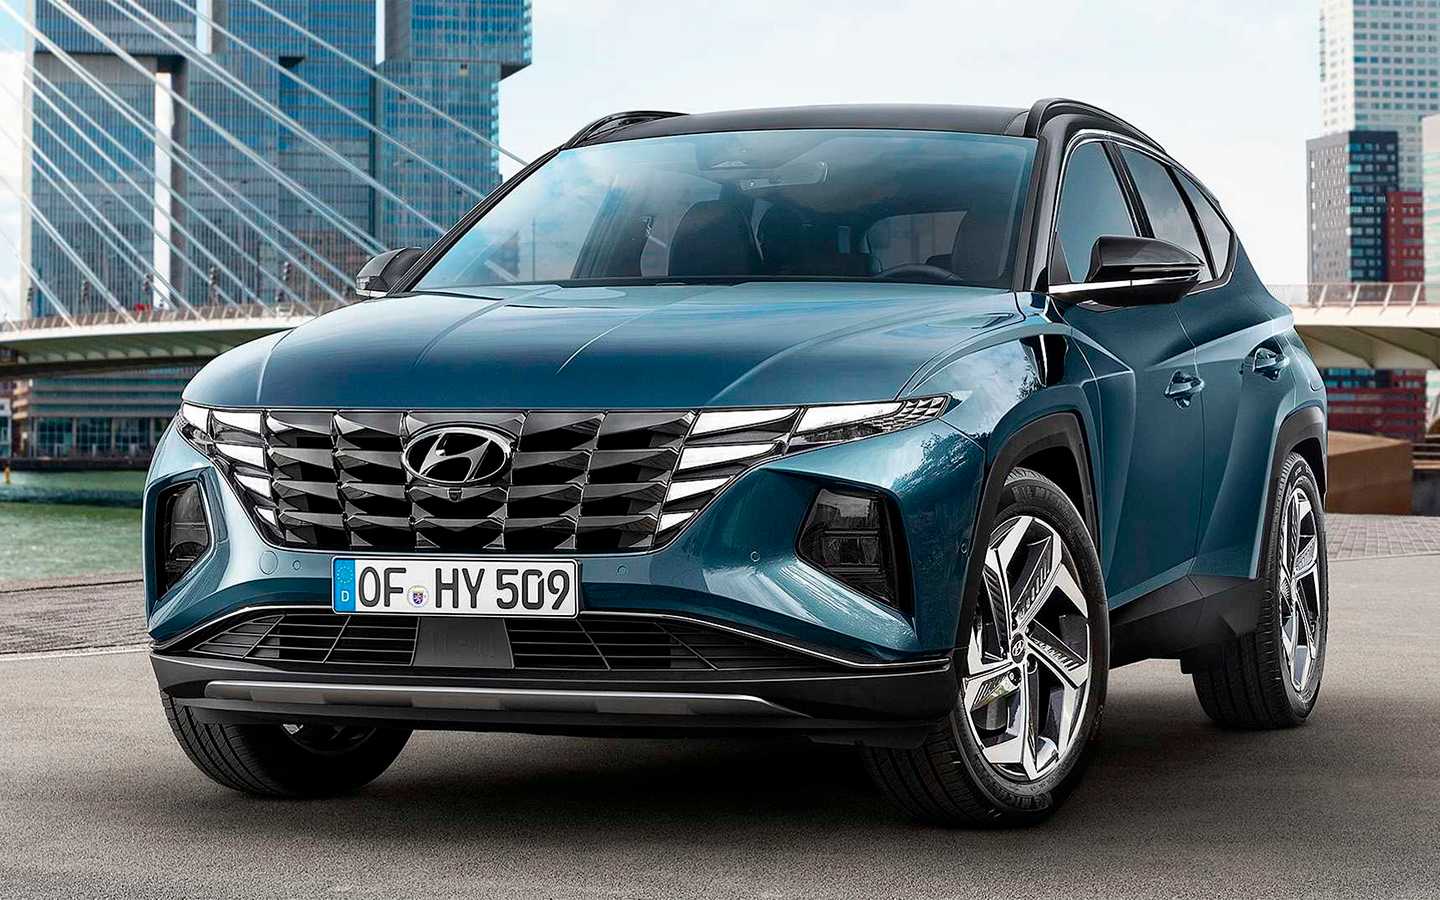 Кросс-хэтч Hyundai Bayon – одна из новых моделей корейского автопроизводителя Машина появилась в 2021 году и проектировалась специально под нужды европейского рынка с расчетом, чтобы занять бюджетный сегмент